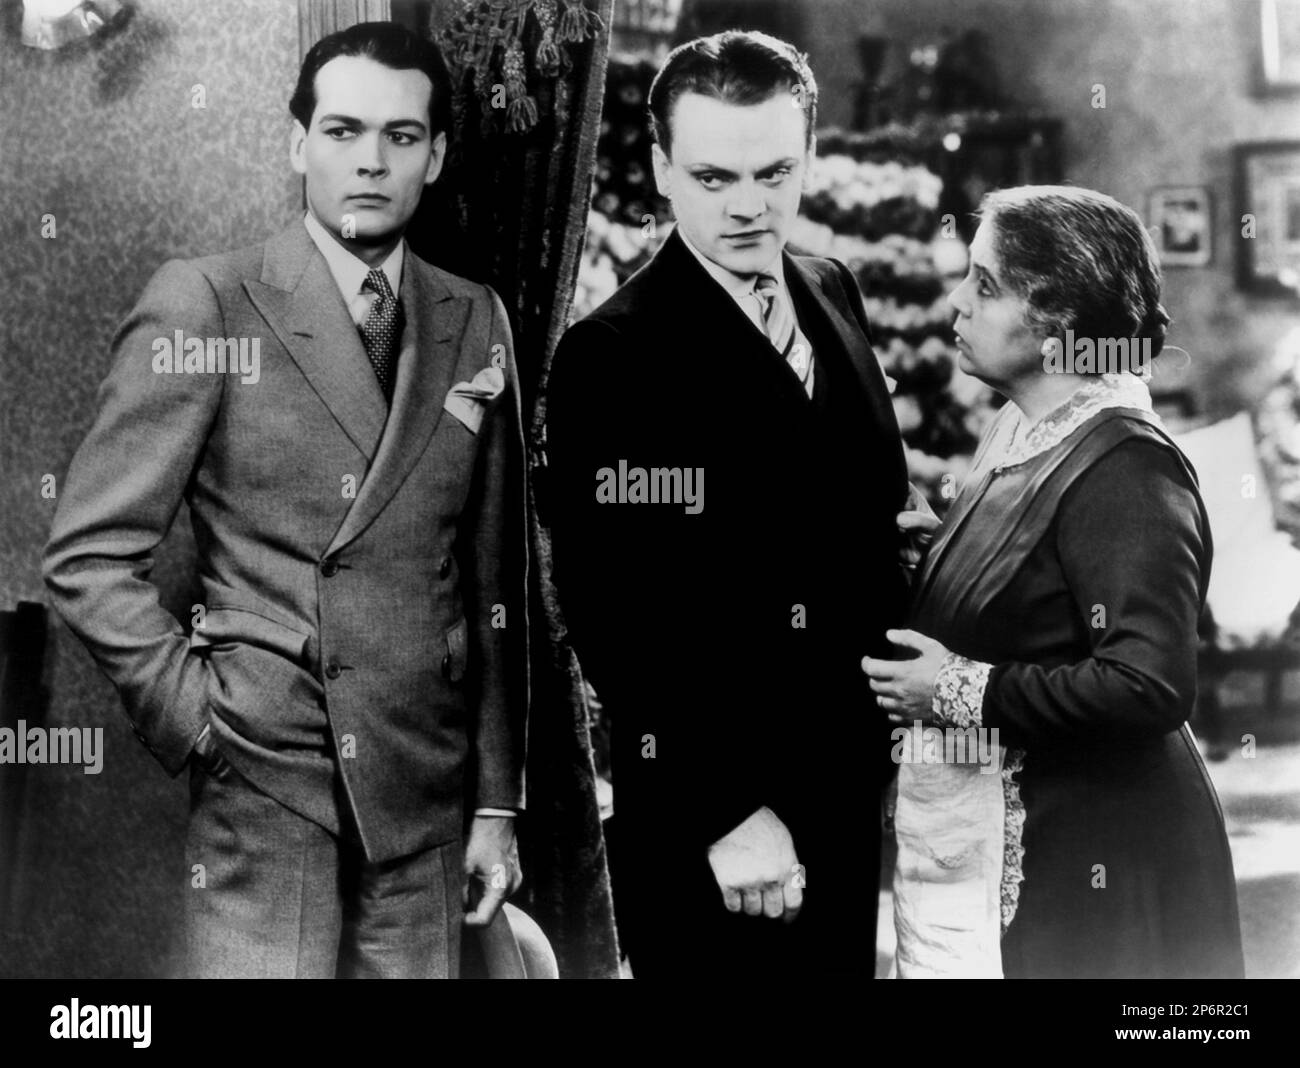 1931 : El actor JAMES CAGNEY ( 1899 - 1986 ) con DONALD COOK ( 1901 - 1961 ) En EL ENEMIGO PÚBLICO de William A. Wellman, de una novela de Kubec Glasmon , Pubblicitary SHOT - CINEMA - ATTORE CINEMATOGRAFICO - TIE - cravatta - pochette - fazzoletto nel taschino - GANGSTERN ---- Archivio GBB Foto de stock